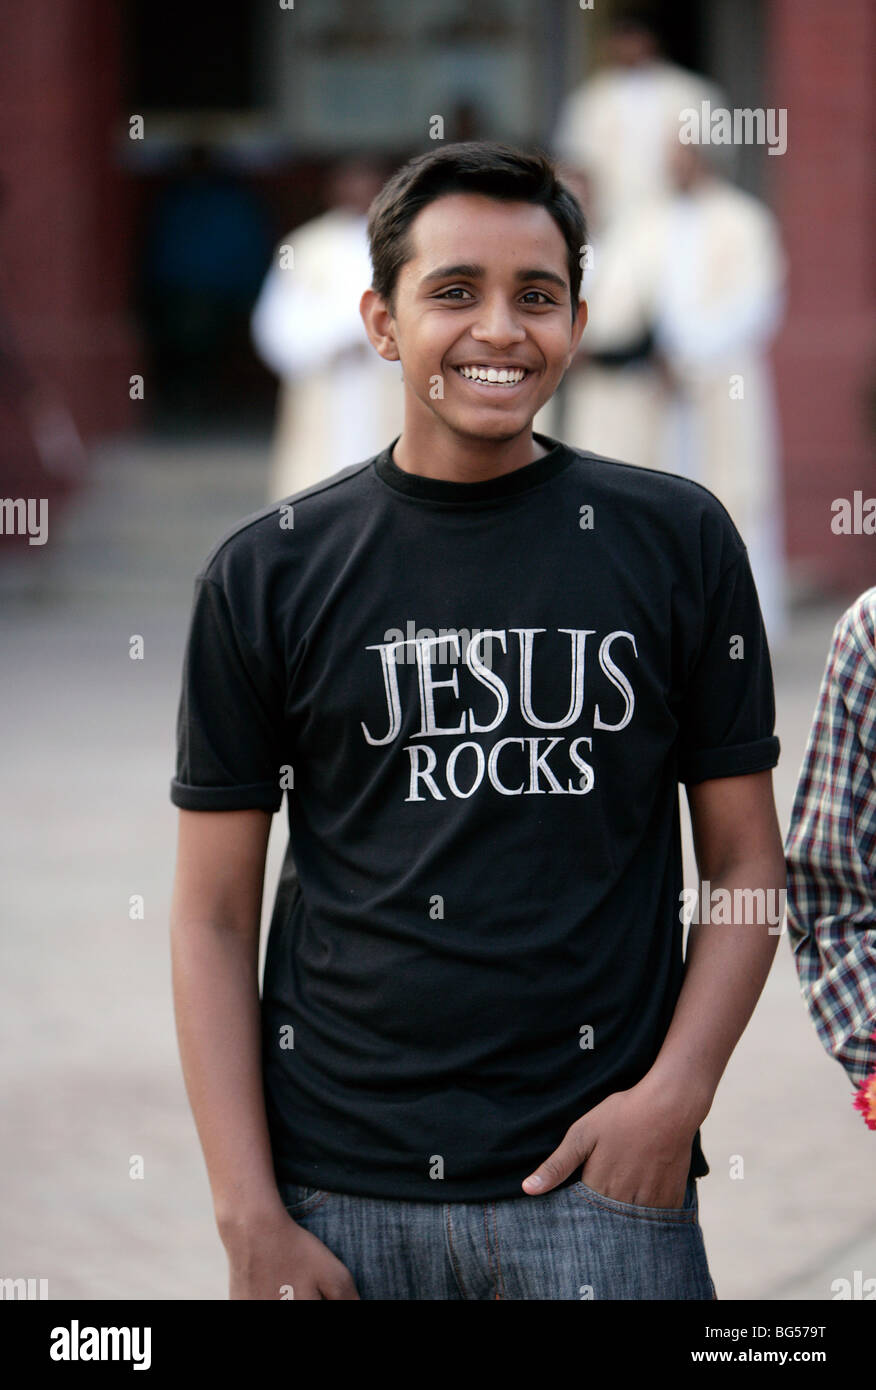 Christlichen Jüngling in sein religiöses Thema Hemd gedruckt JESUS ROCKS. Lucknow, Indien Stockfoto